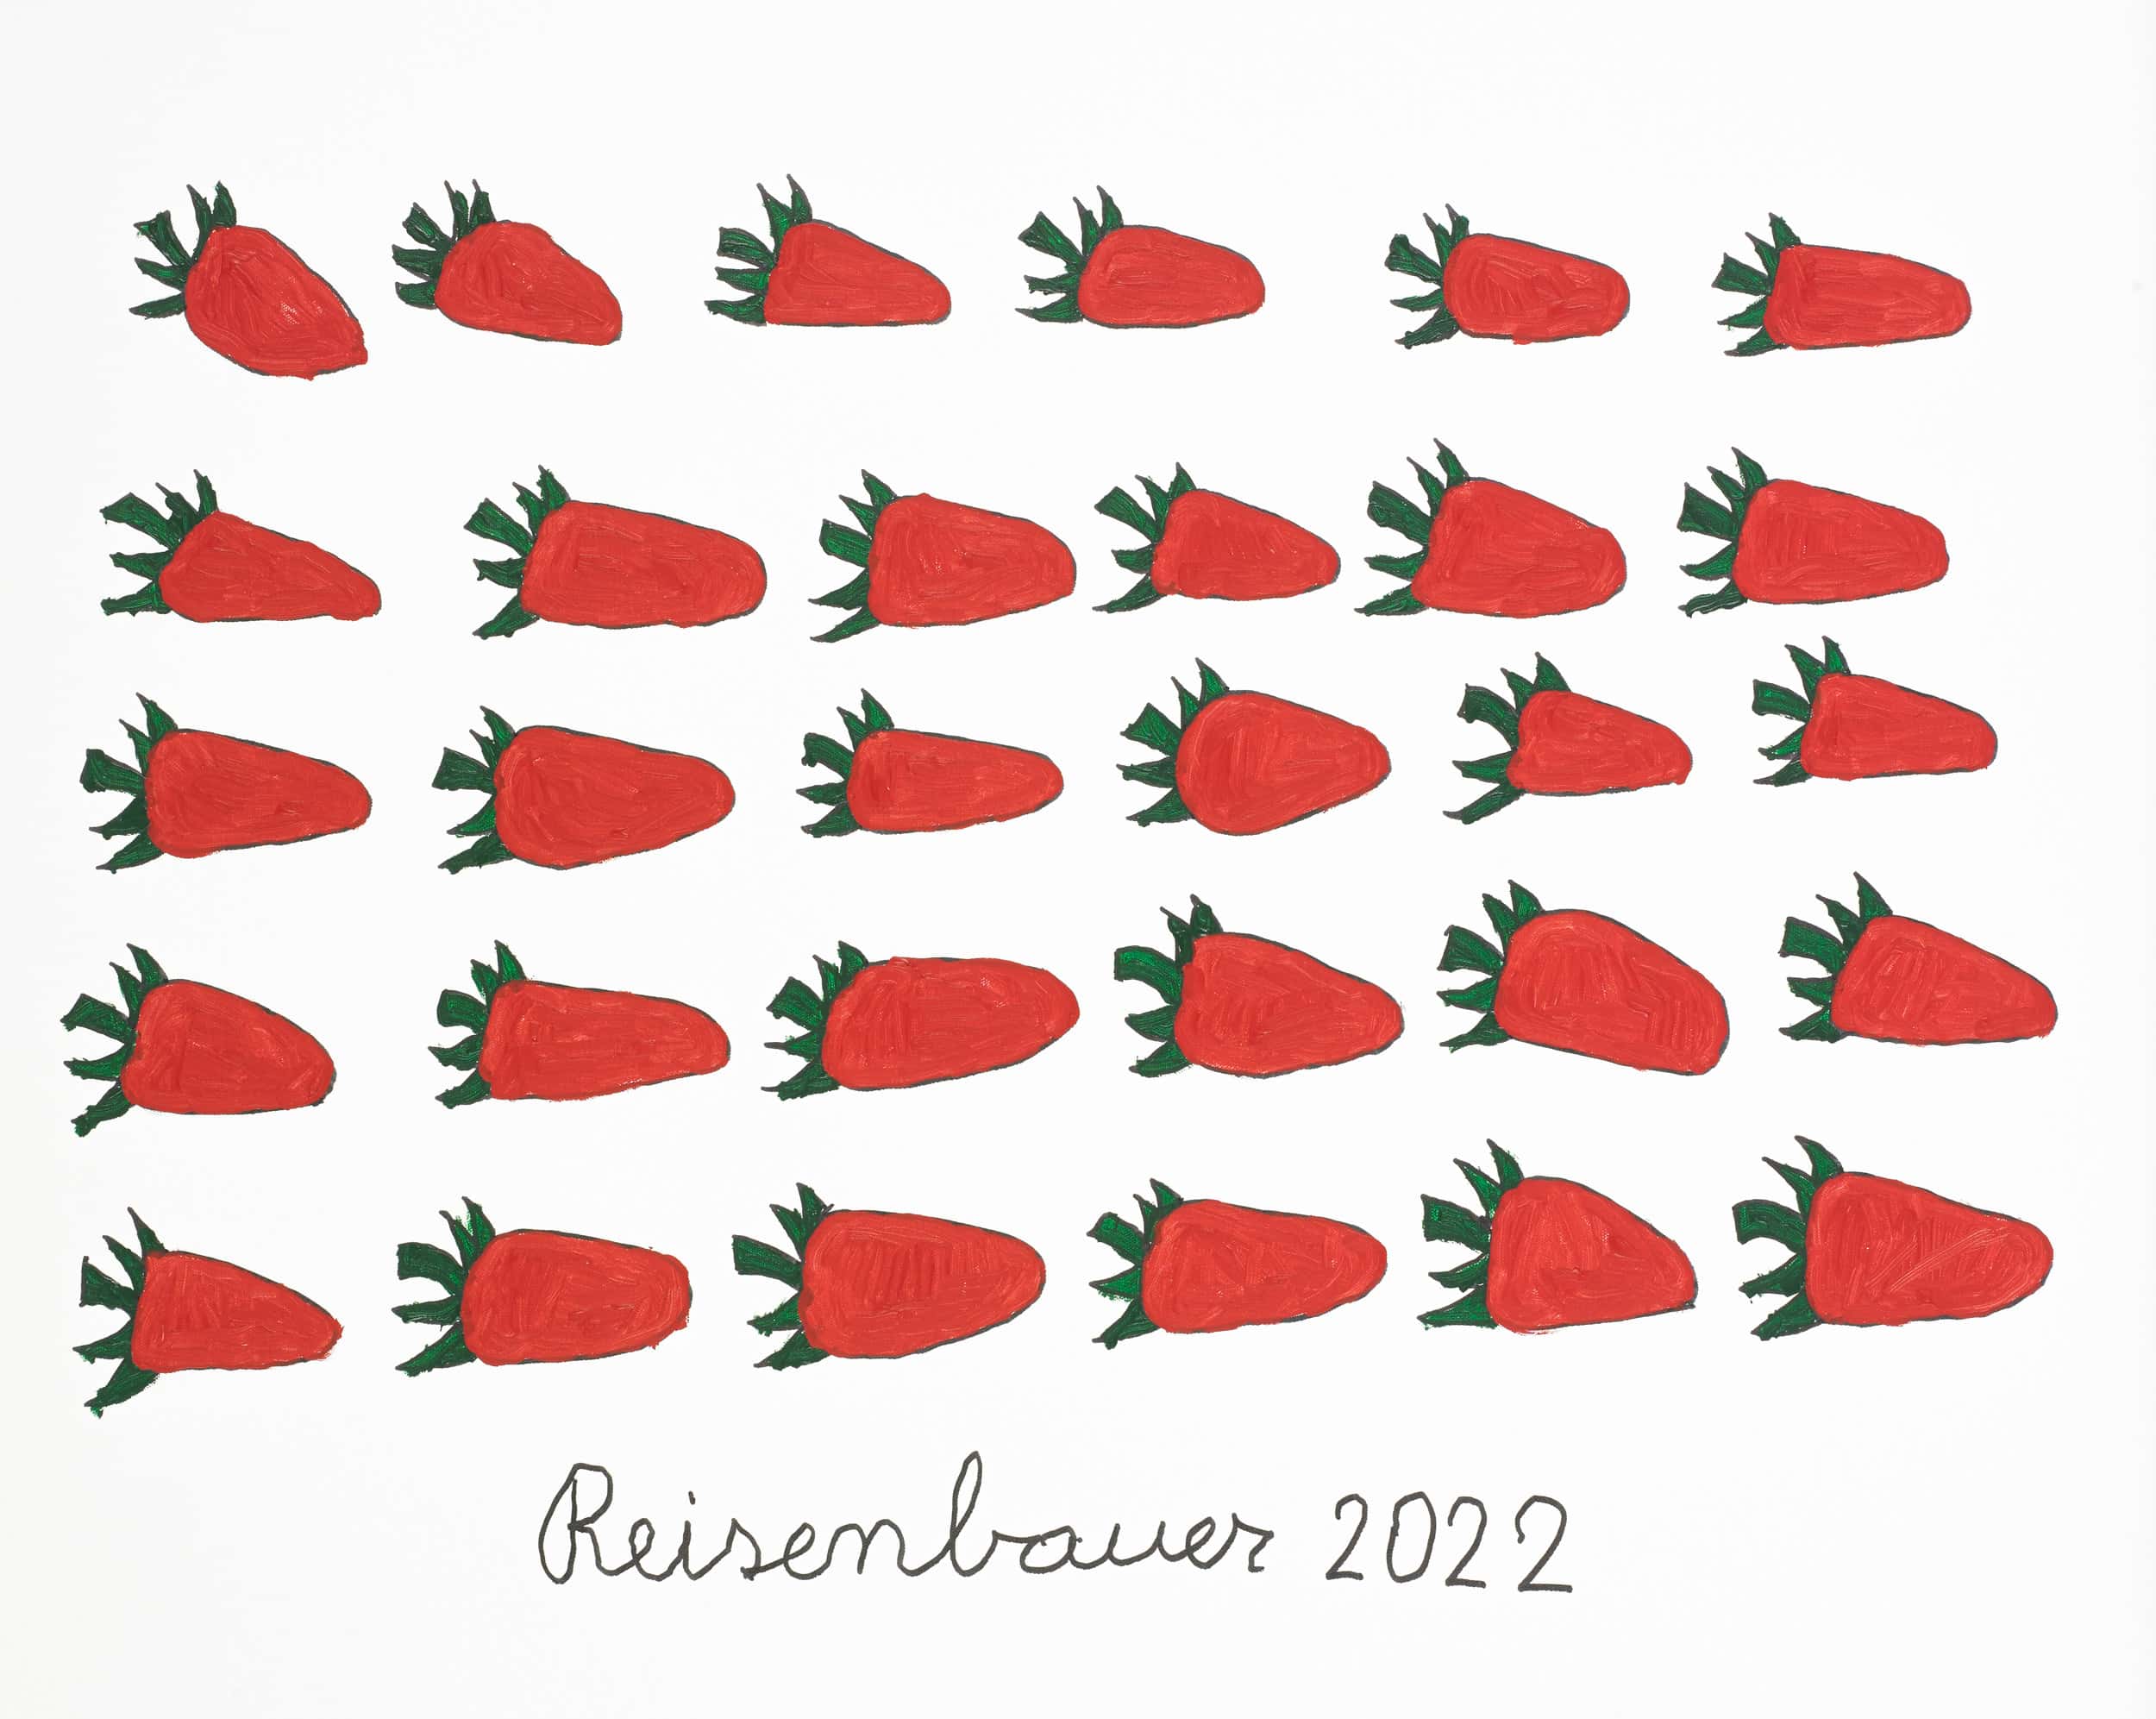 reisenbauer heinrich - Erdbeeren / Strawberries